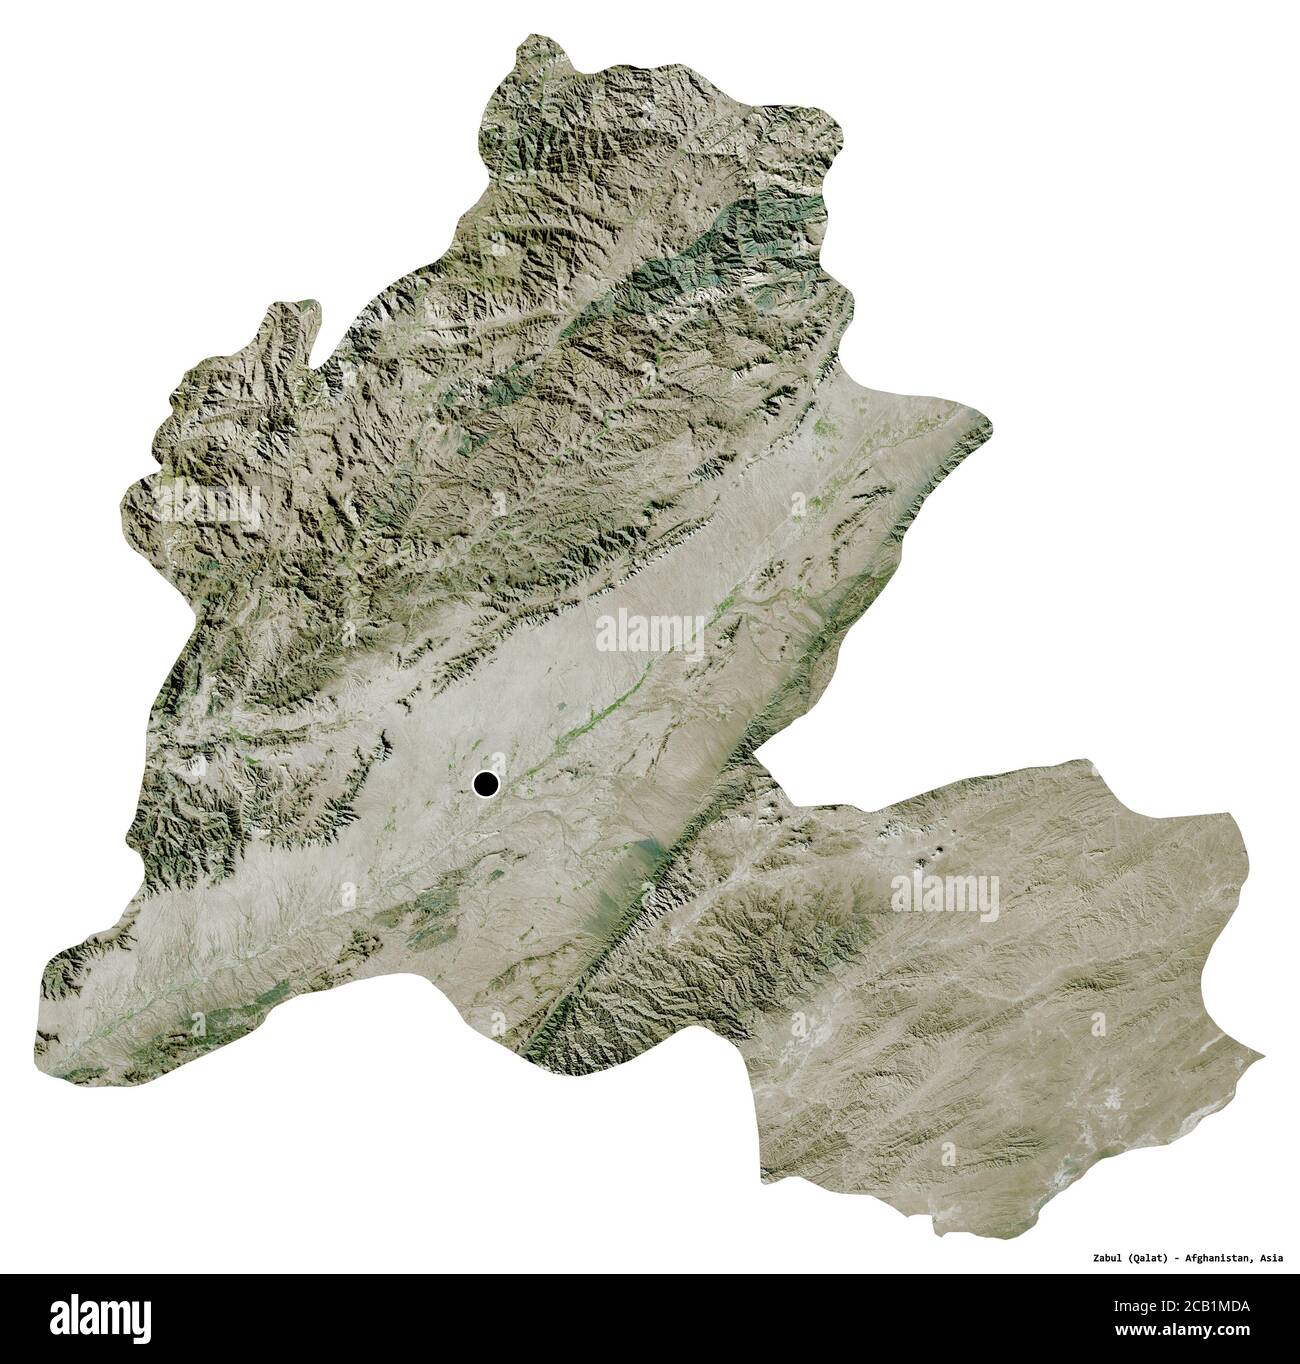 Forma di Zabul, provincia dell'Afghanistan, con la sua capitale isolata su sfondo bianco. Immagini satellitari. Rendering 3D Foto Stock